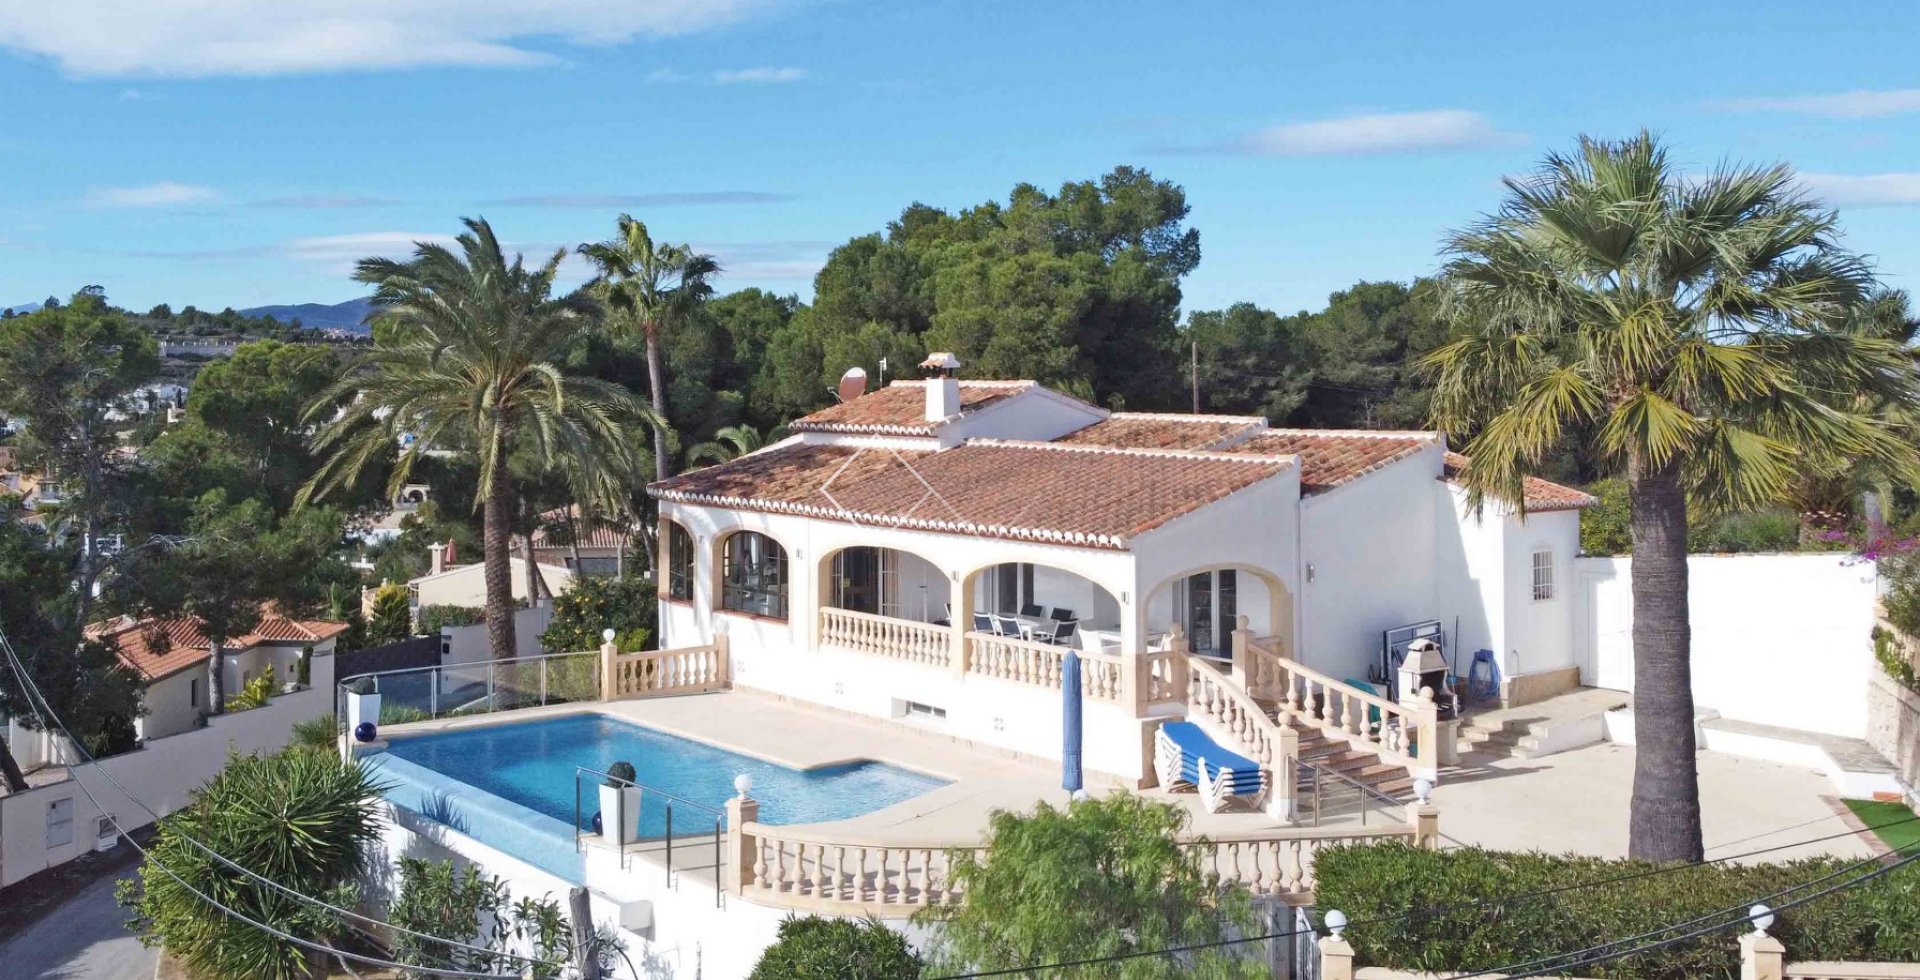  Haus und Pool - Villa mit spektakulärem Meerblick in Moraira zu verkaufen